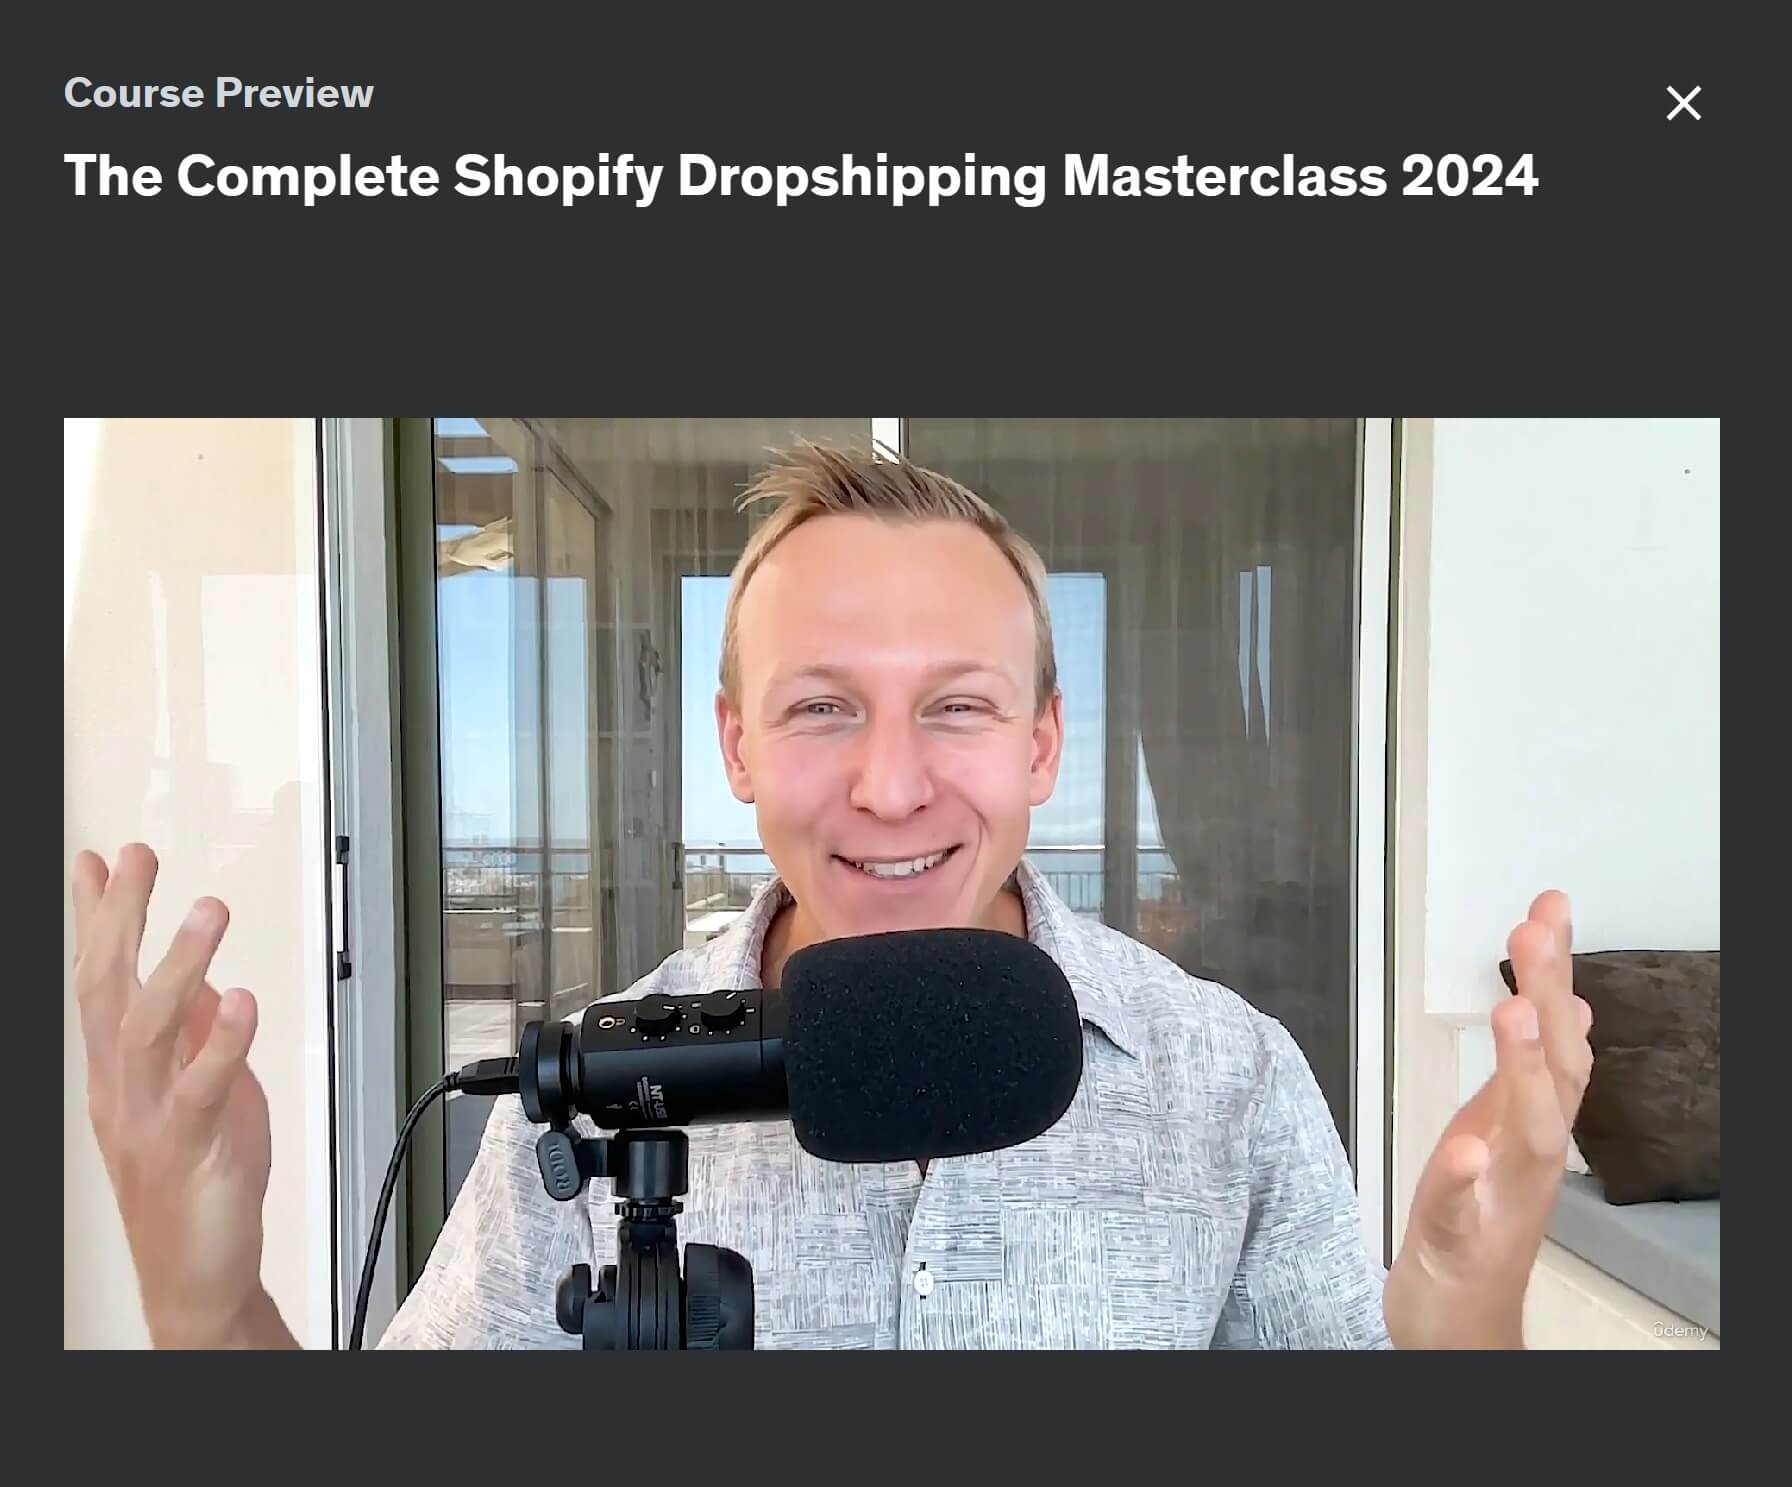 Anteprima completa della Masterclass Dropshipping Shopify 2024